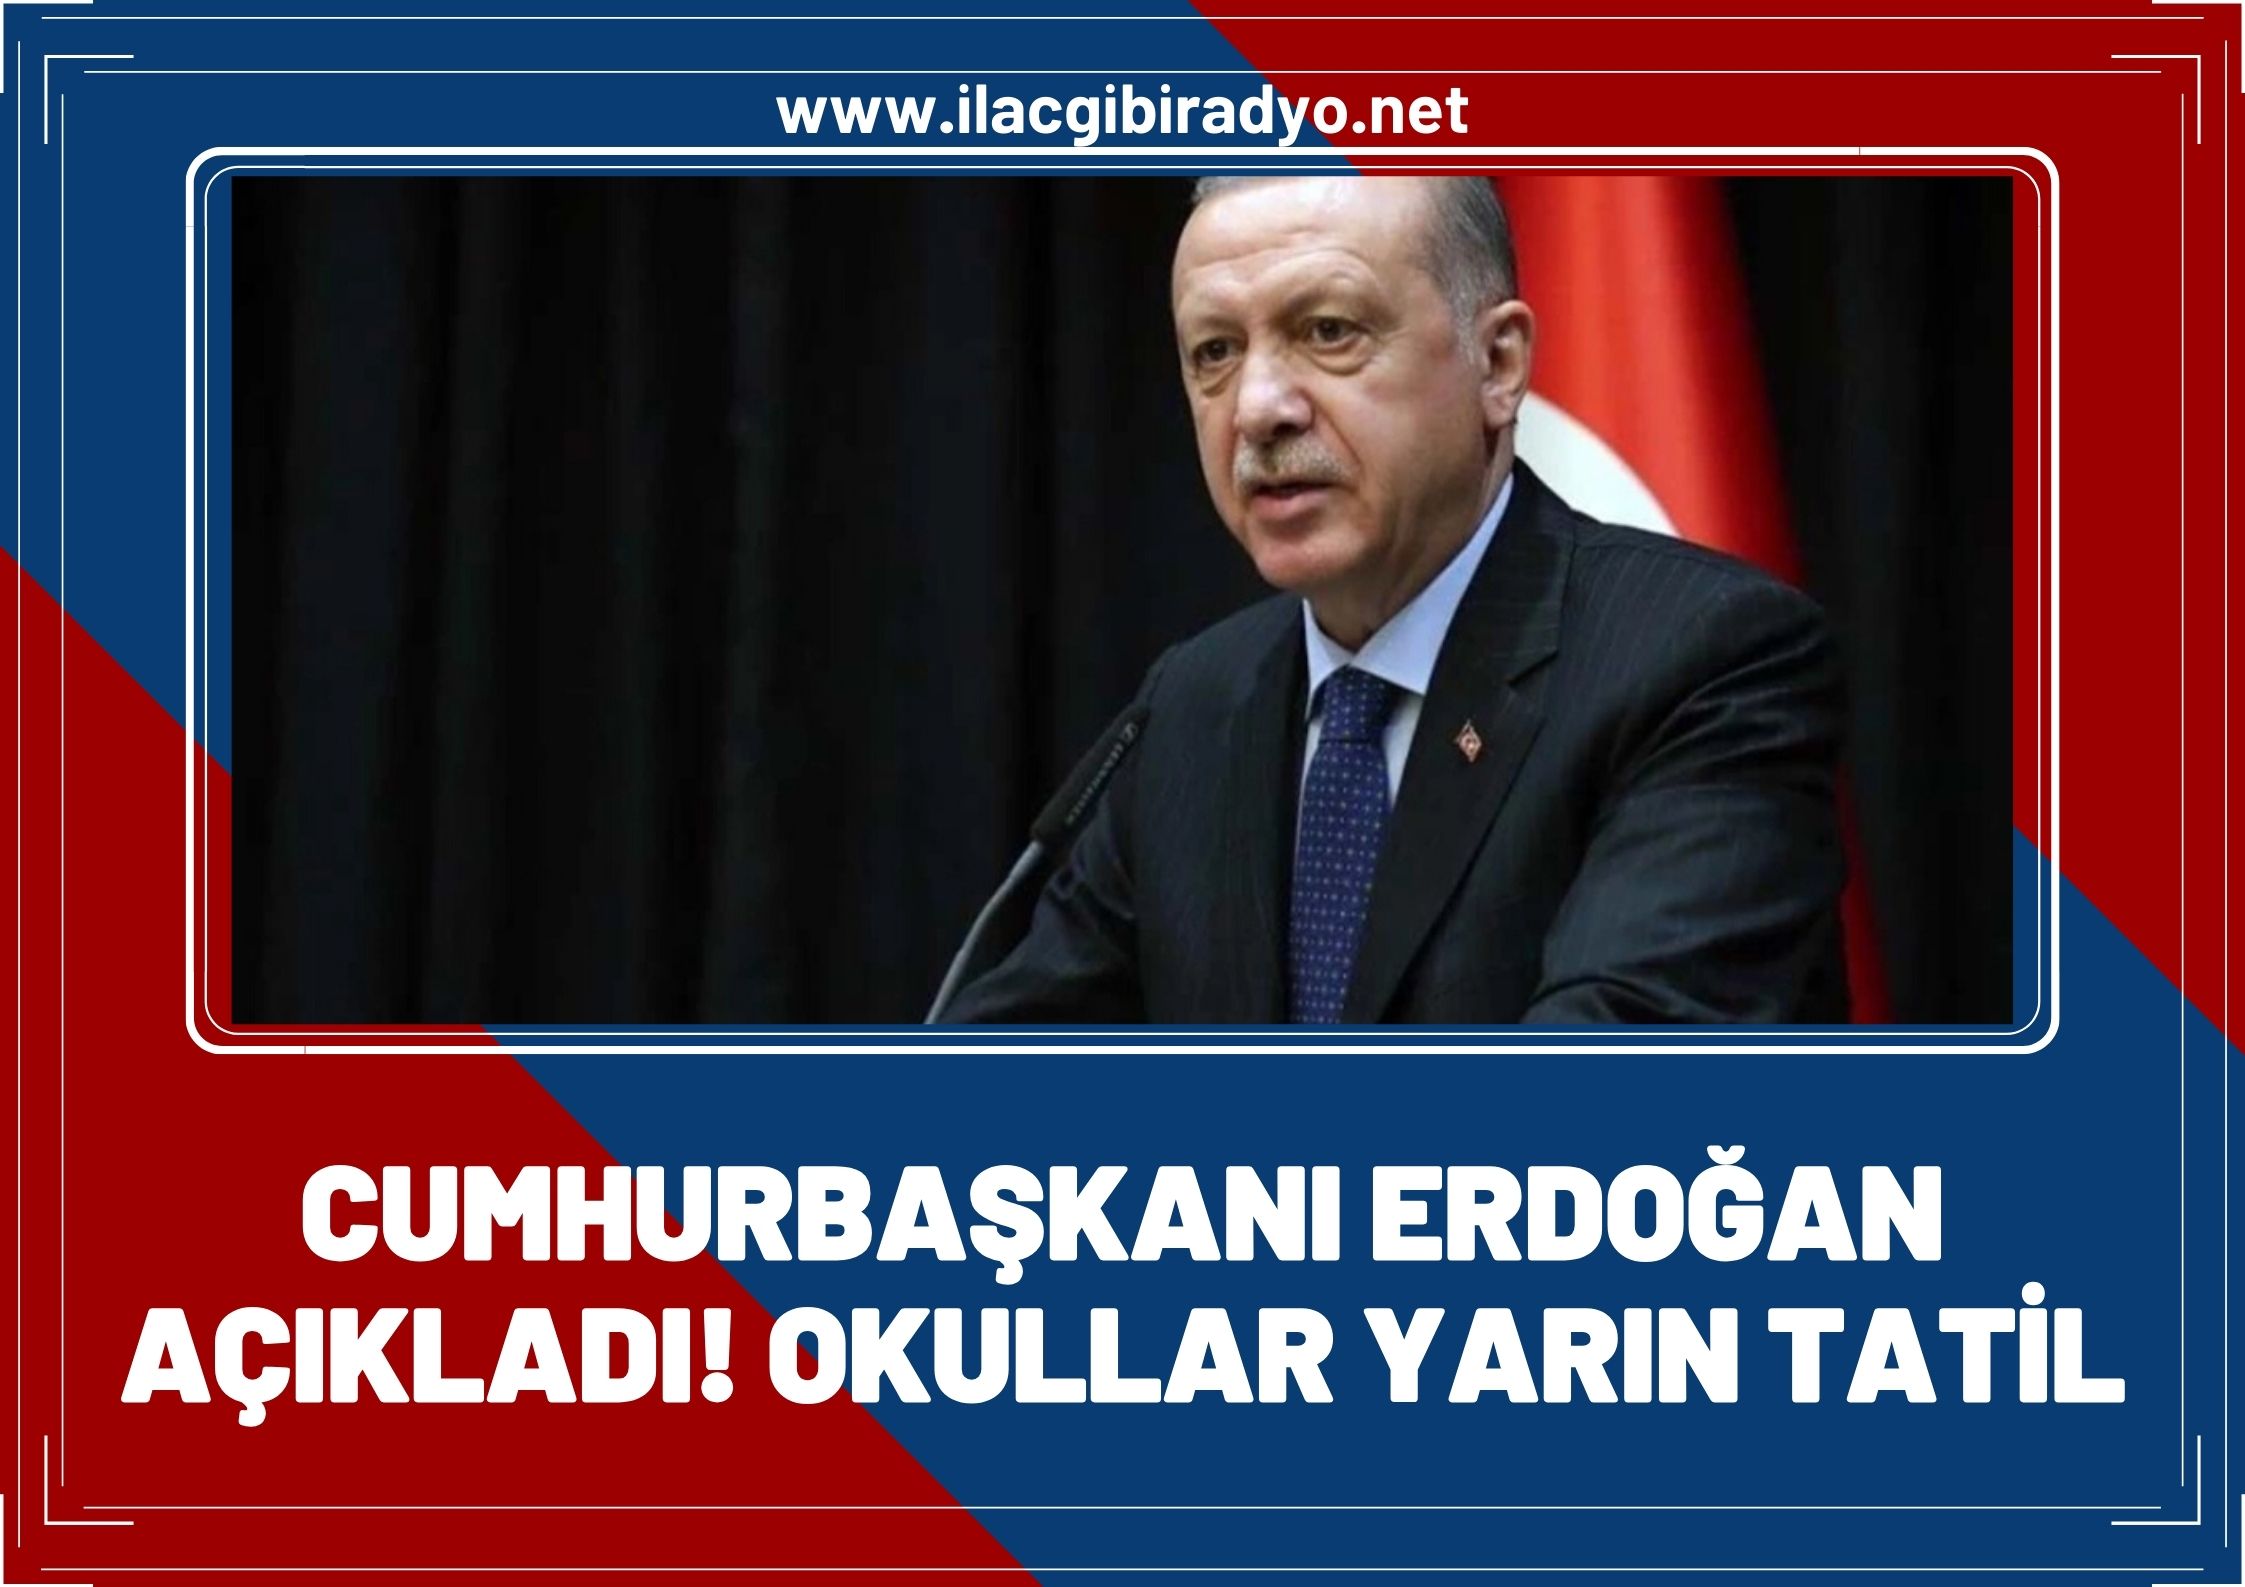 Cumhurbaşkanı Erdoğan açıkladı! Okullar tatil edildi